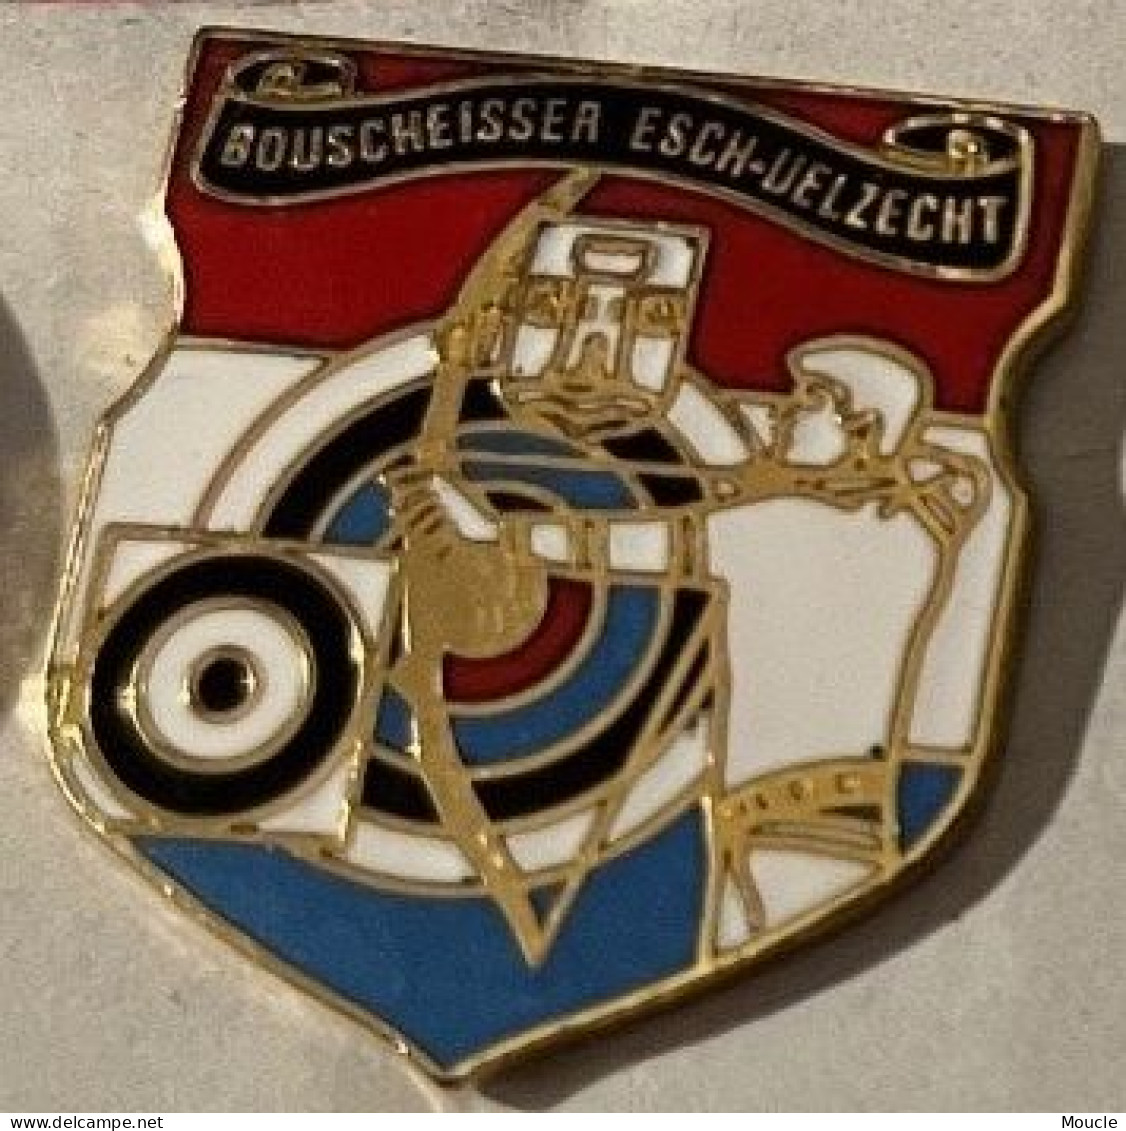 TIR A L'ARC CLUB - CLUB - FLECHE - CIBLE - BOUSCHEISSER- ESCH - UELZECHT - SUISSE - SCHWEIZ - SWITZERLAND - ARCHER -(34) - Archery